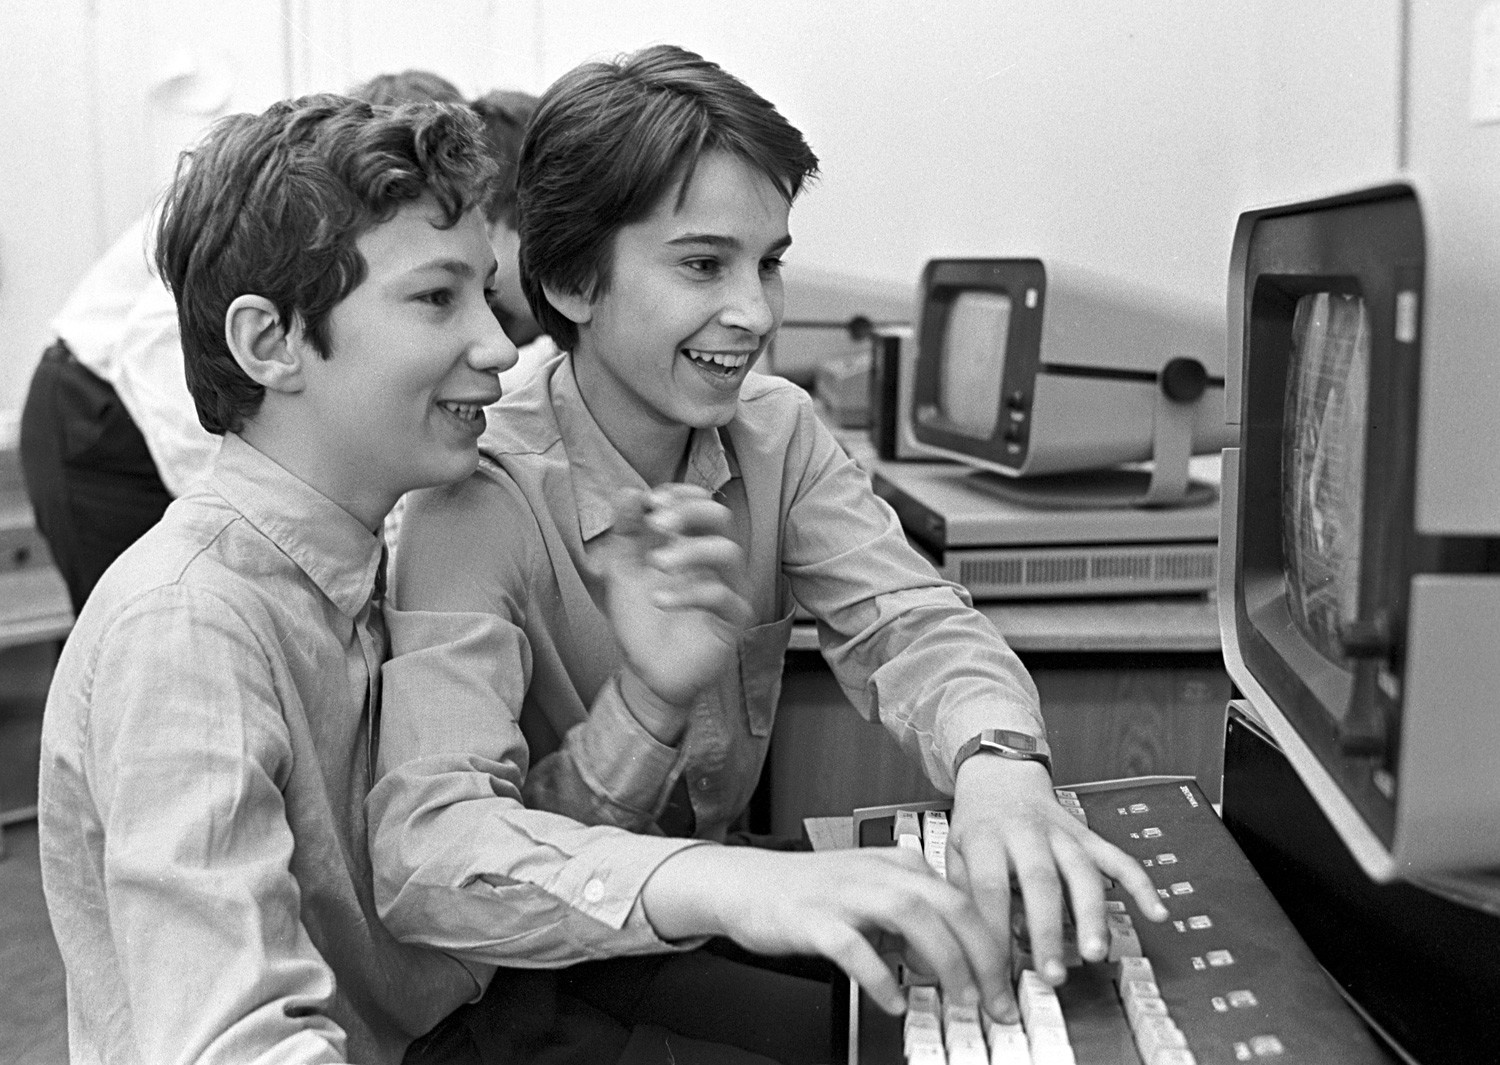 Sovjetski školarci se uče služiti računalom na satu informatike (1985.).


